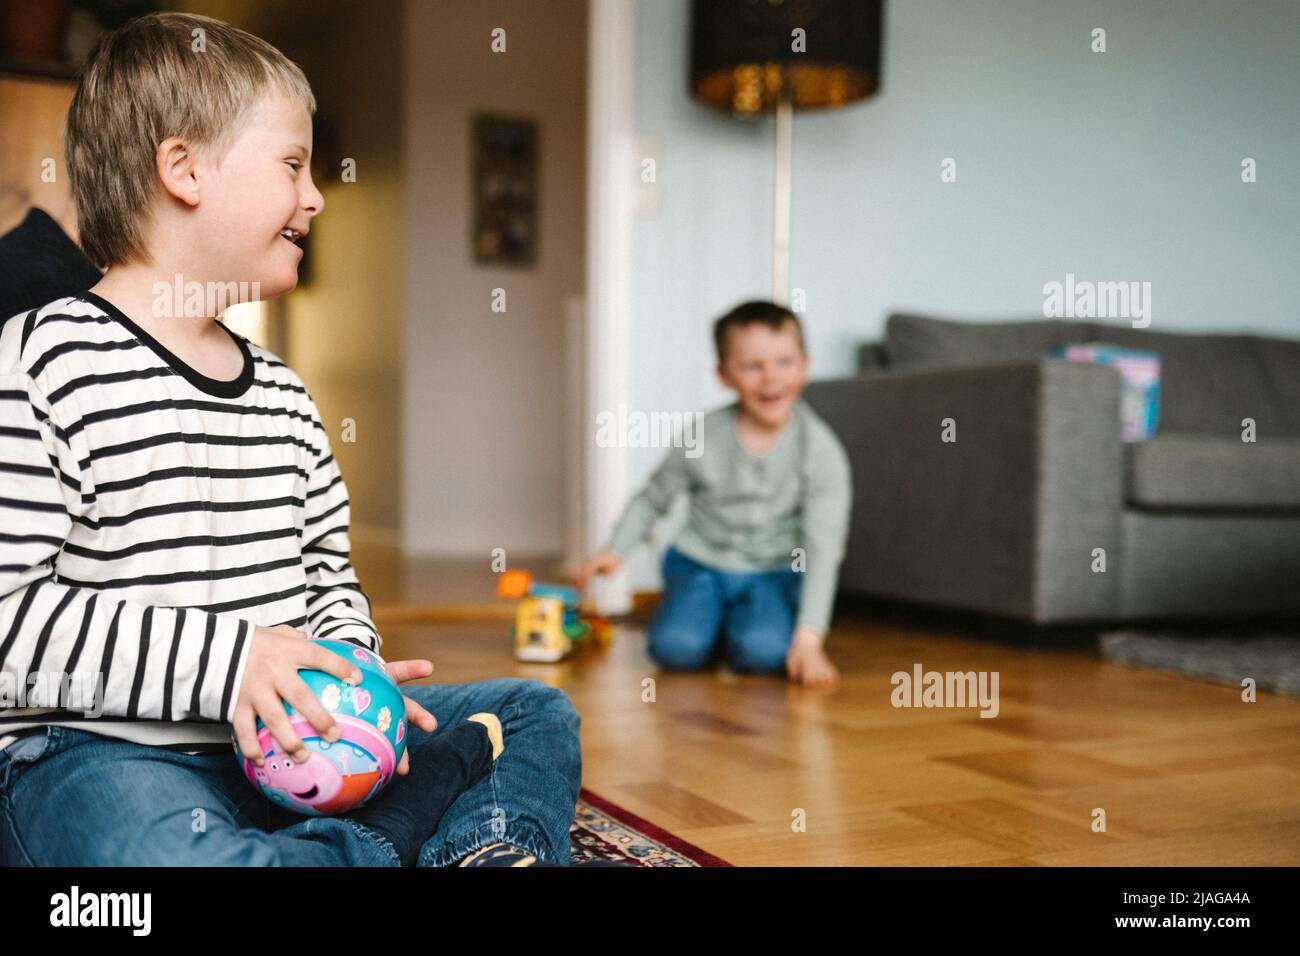 Glücklicher Junge mit Down-Syndrom mit Ball sitzt auf dem Boden im Wohnzimmer Stockfoto